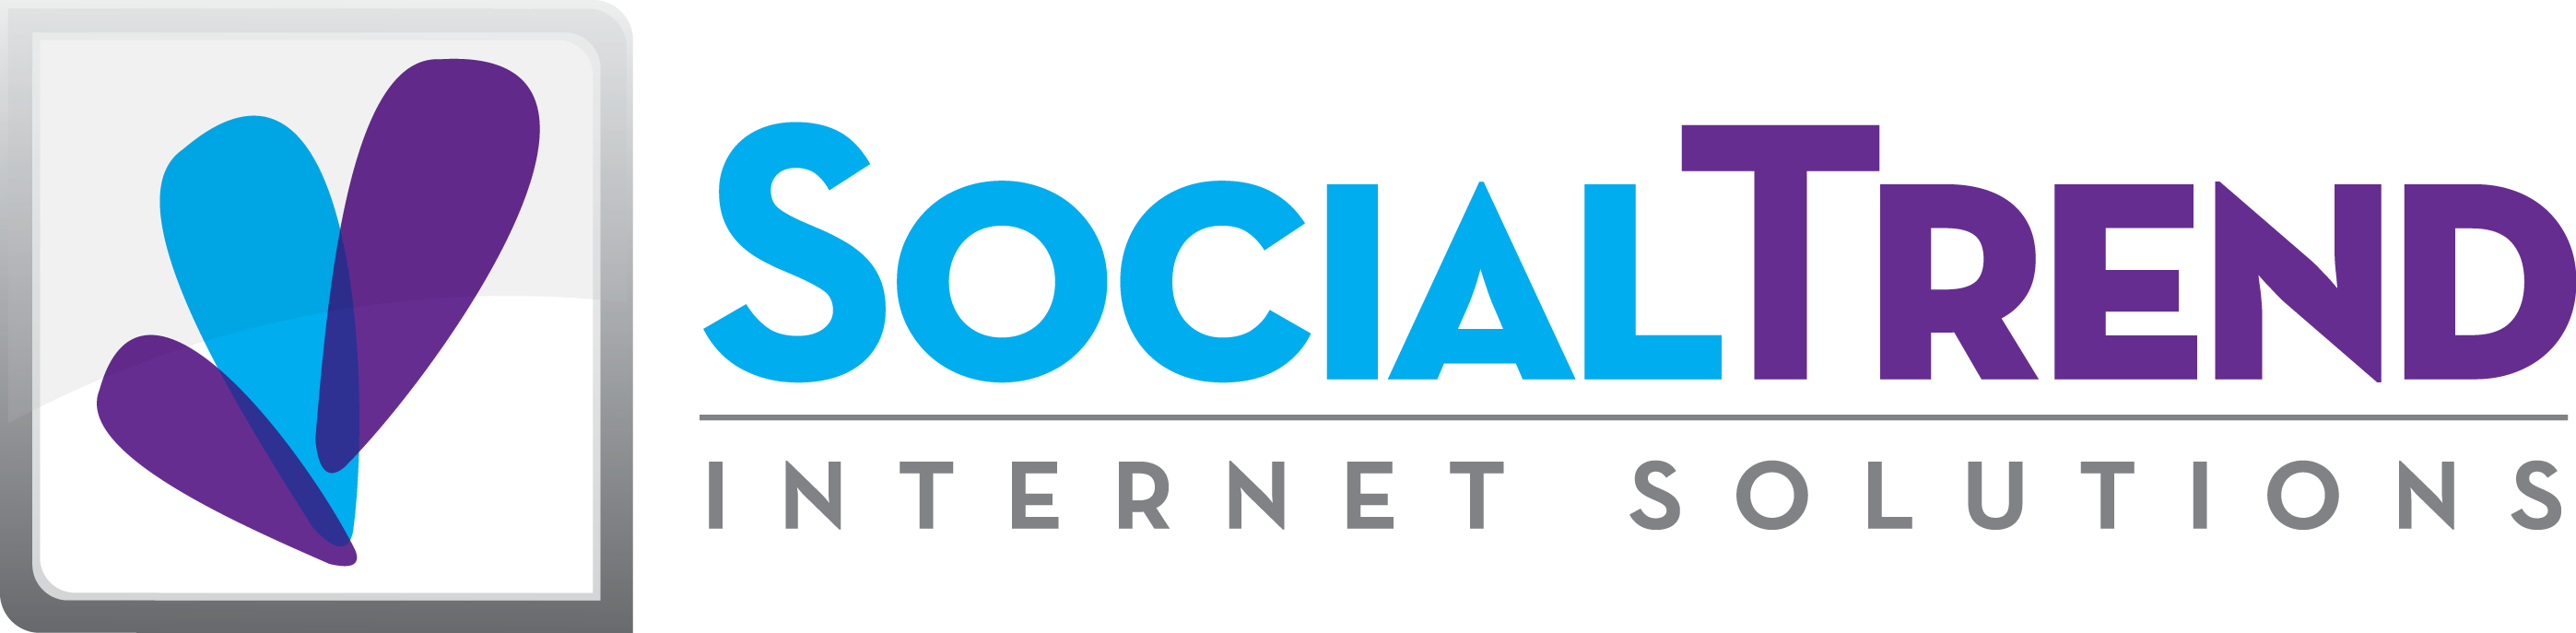 SocialTrend-Logo.png